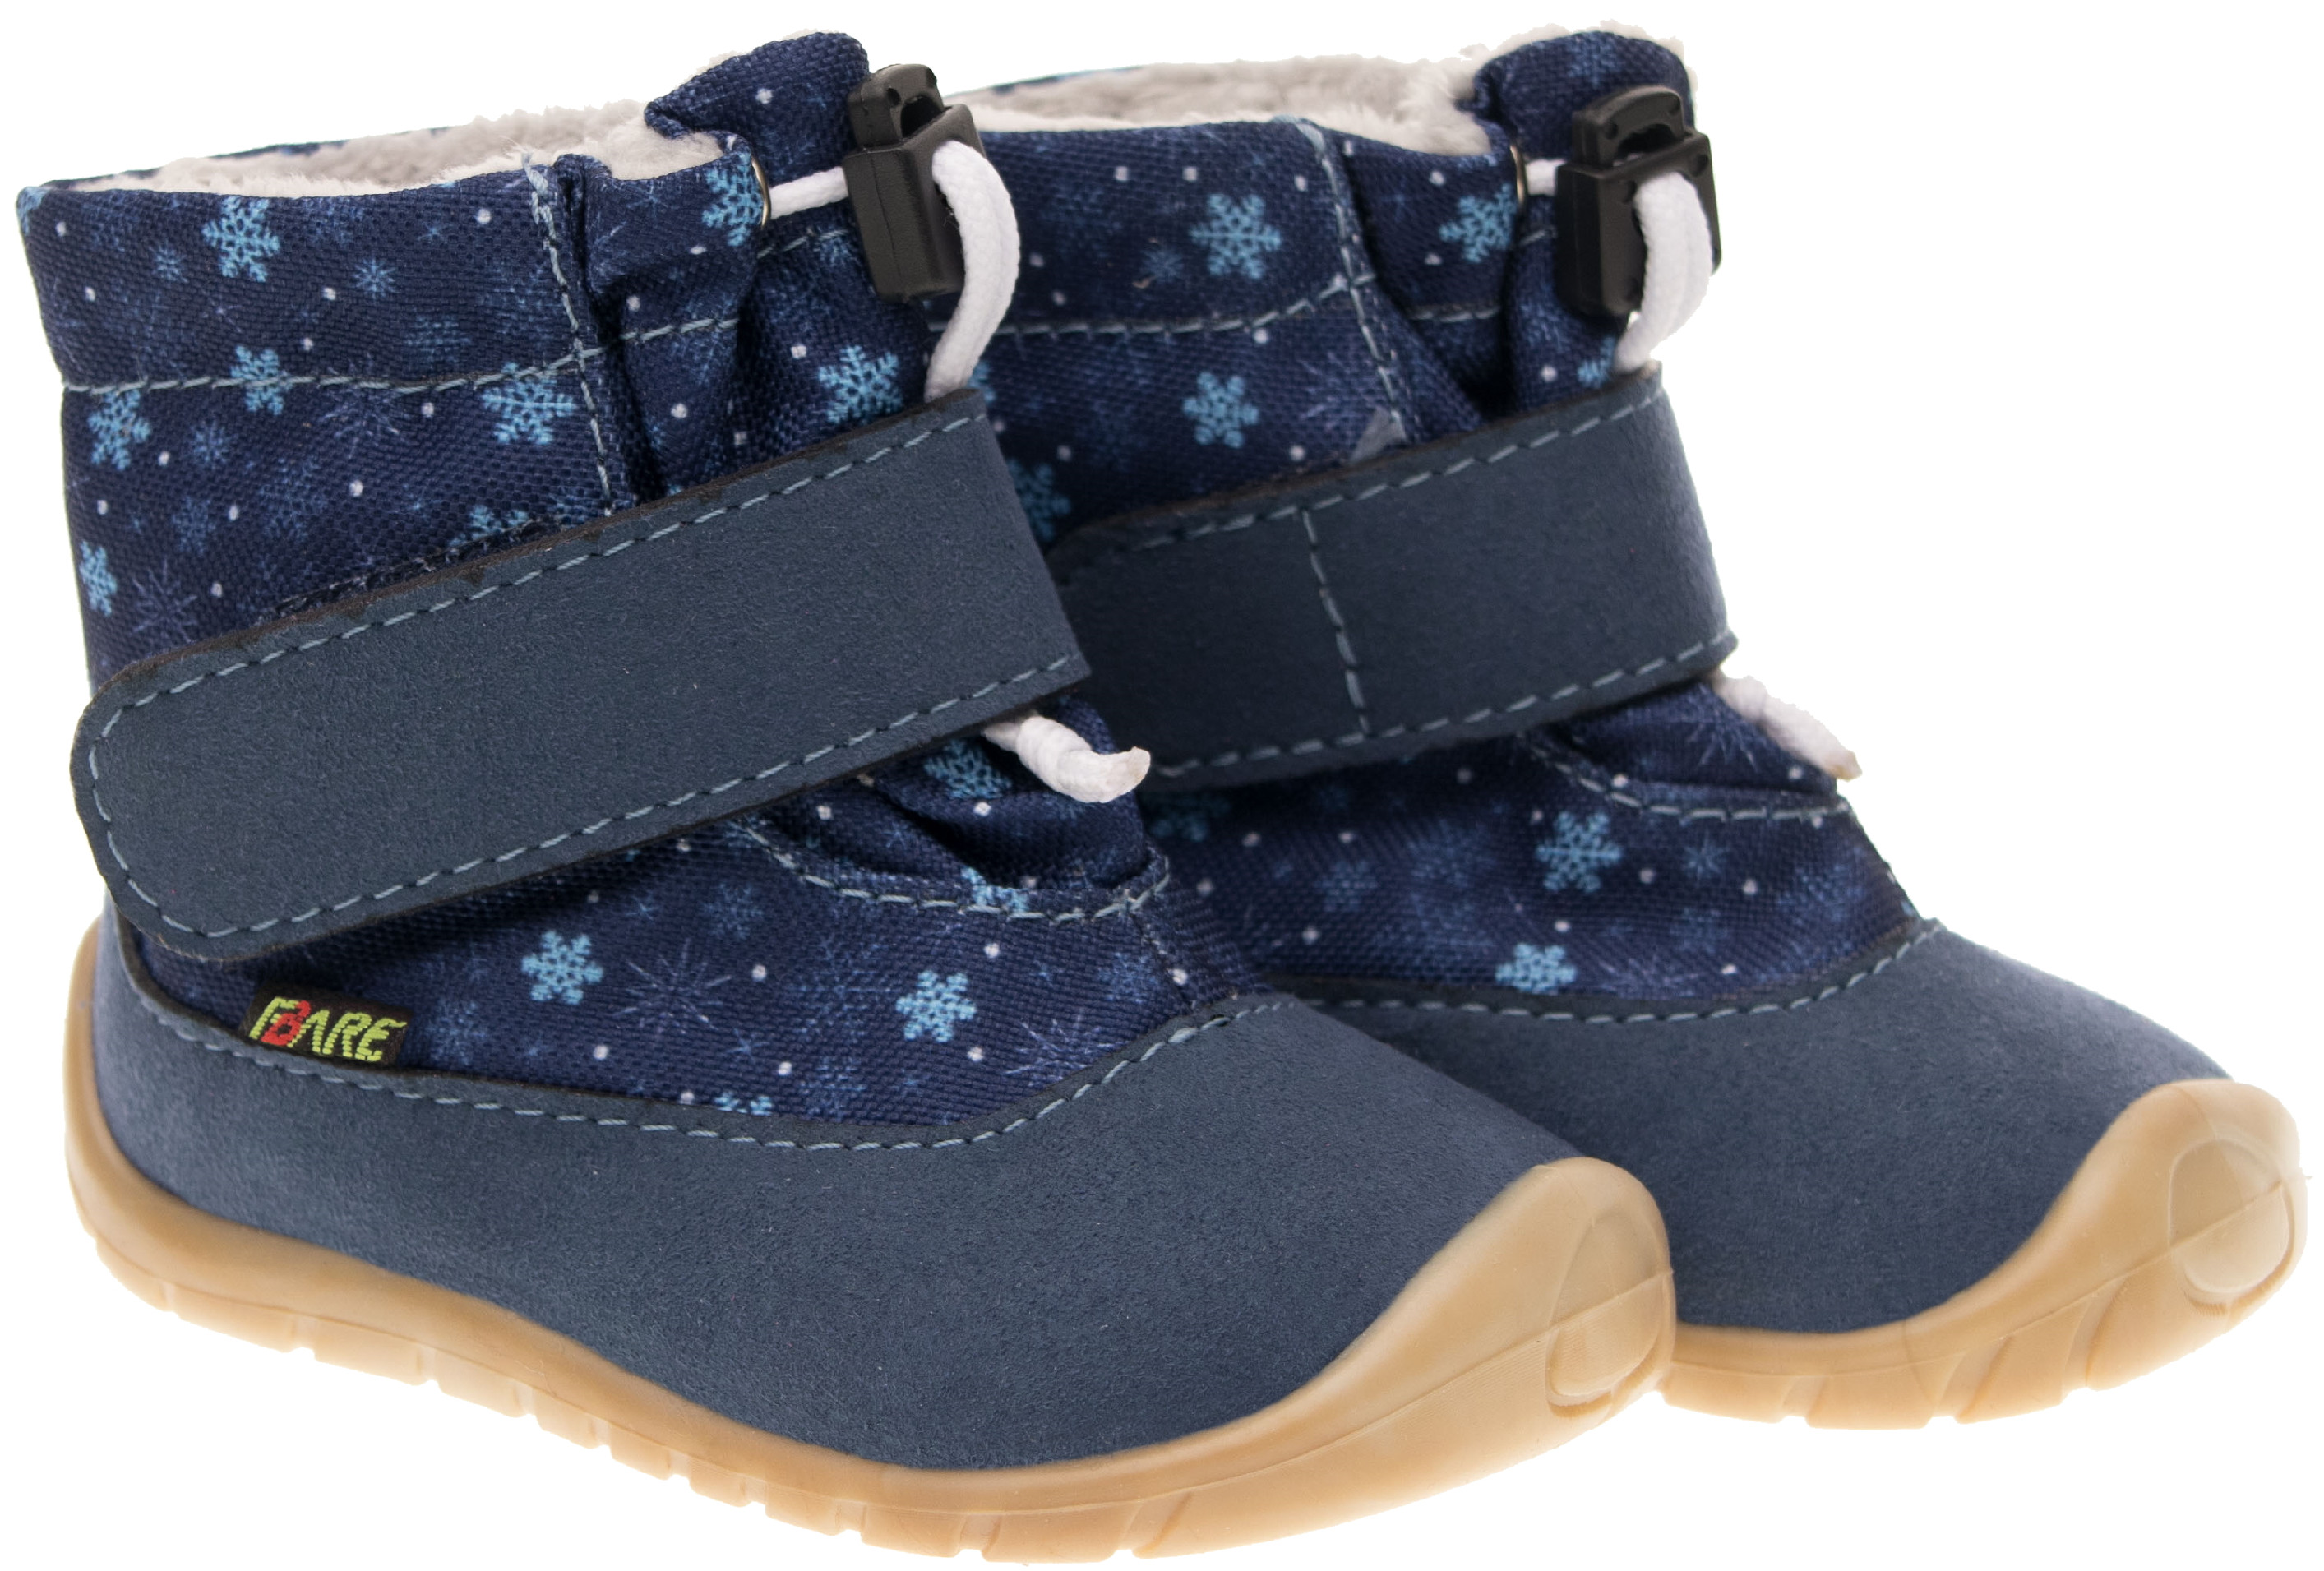 FARE BARE zimní obuv 5041401 modrá Velikost: 19